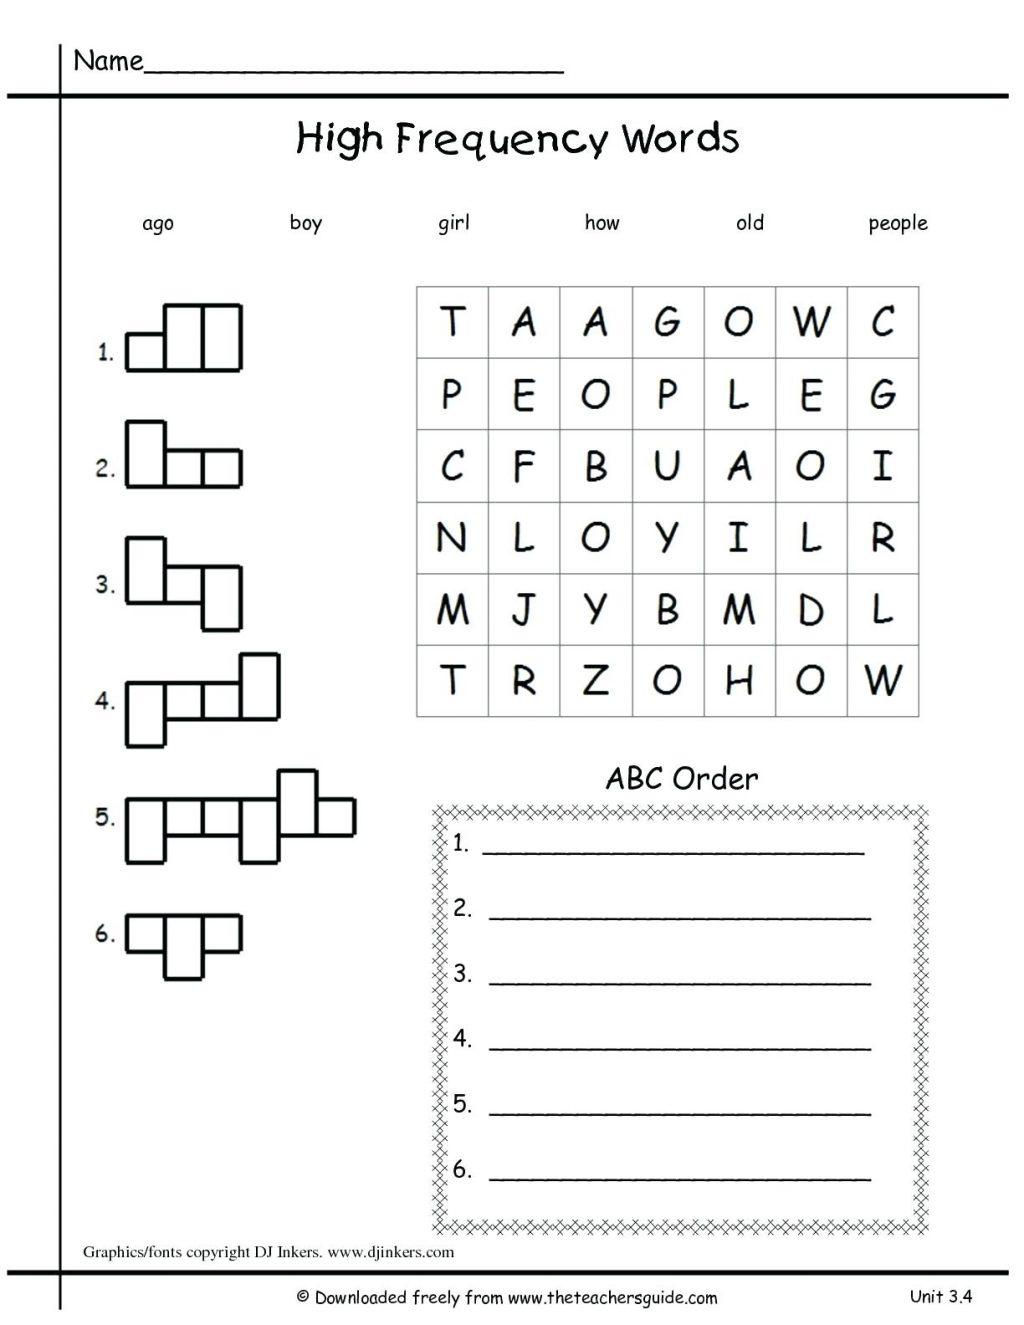 First Ade Language Arts Worksheets For Print Math Kids 1St inside Alphabet Worksheets For 1St Grade